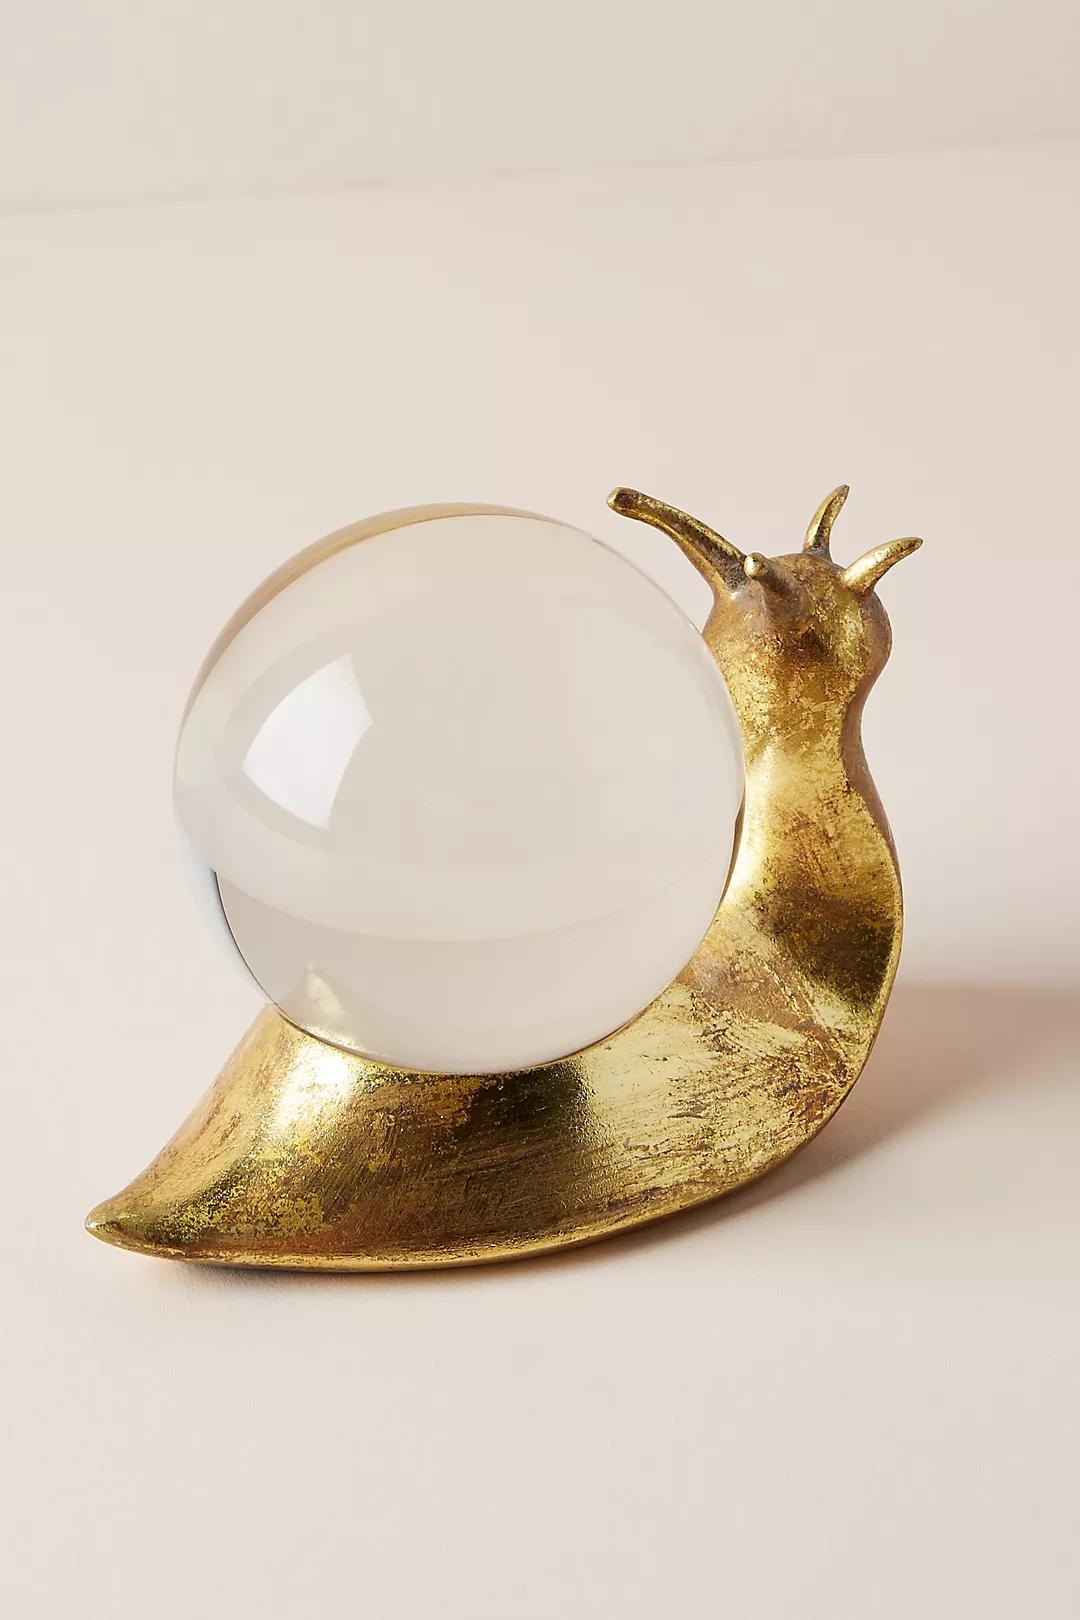 Snail Decorative Object, Gold - Image 3